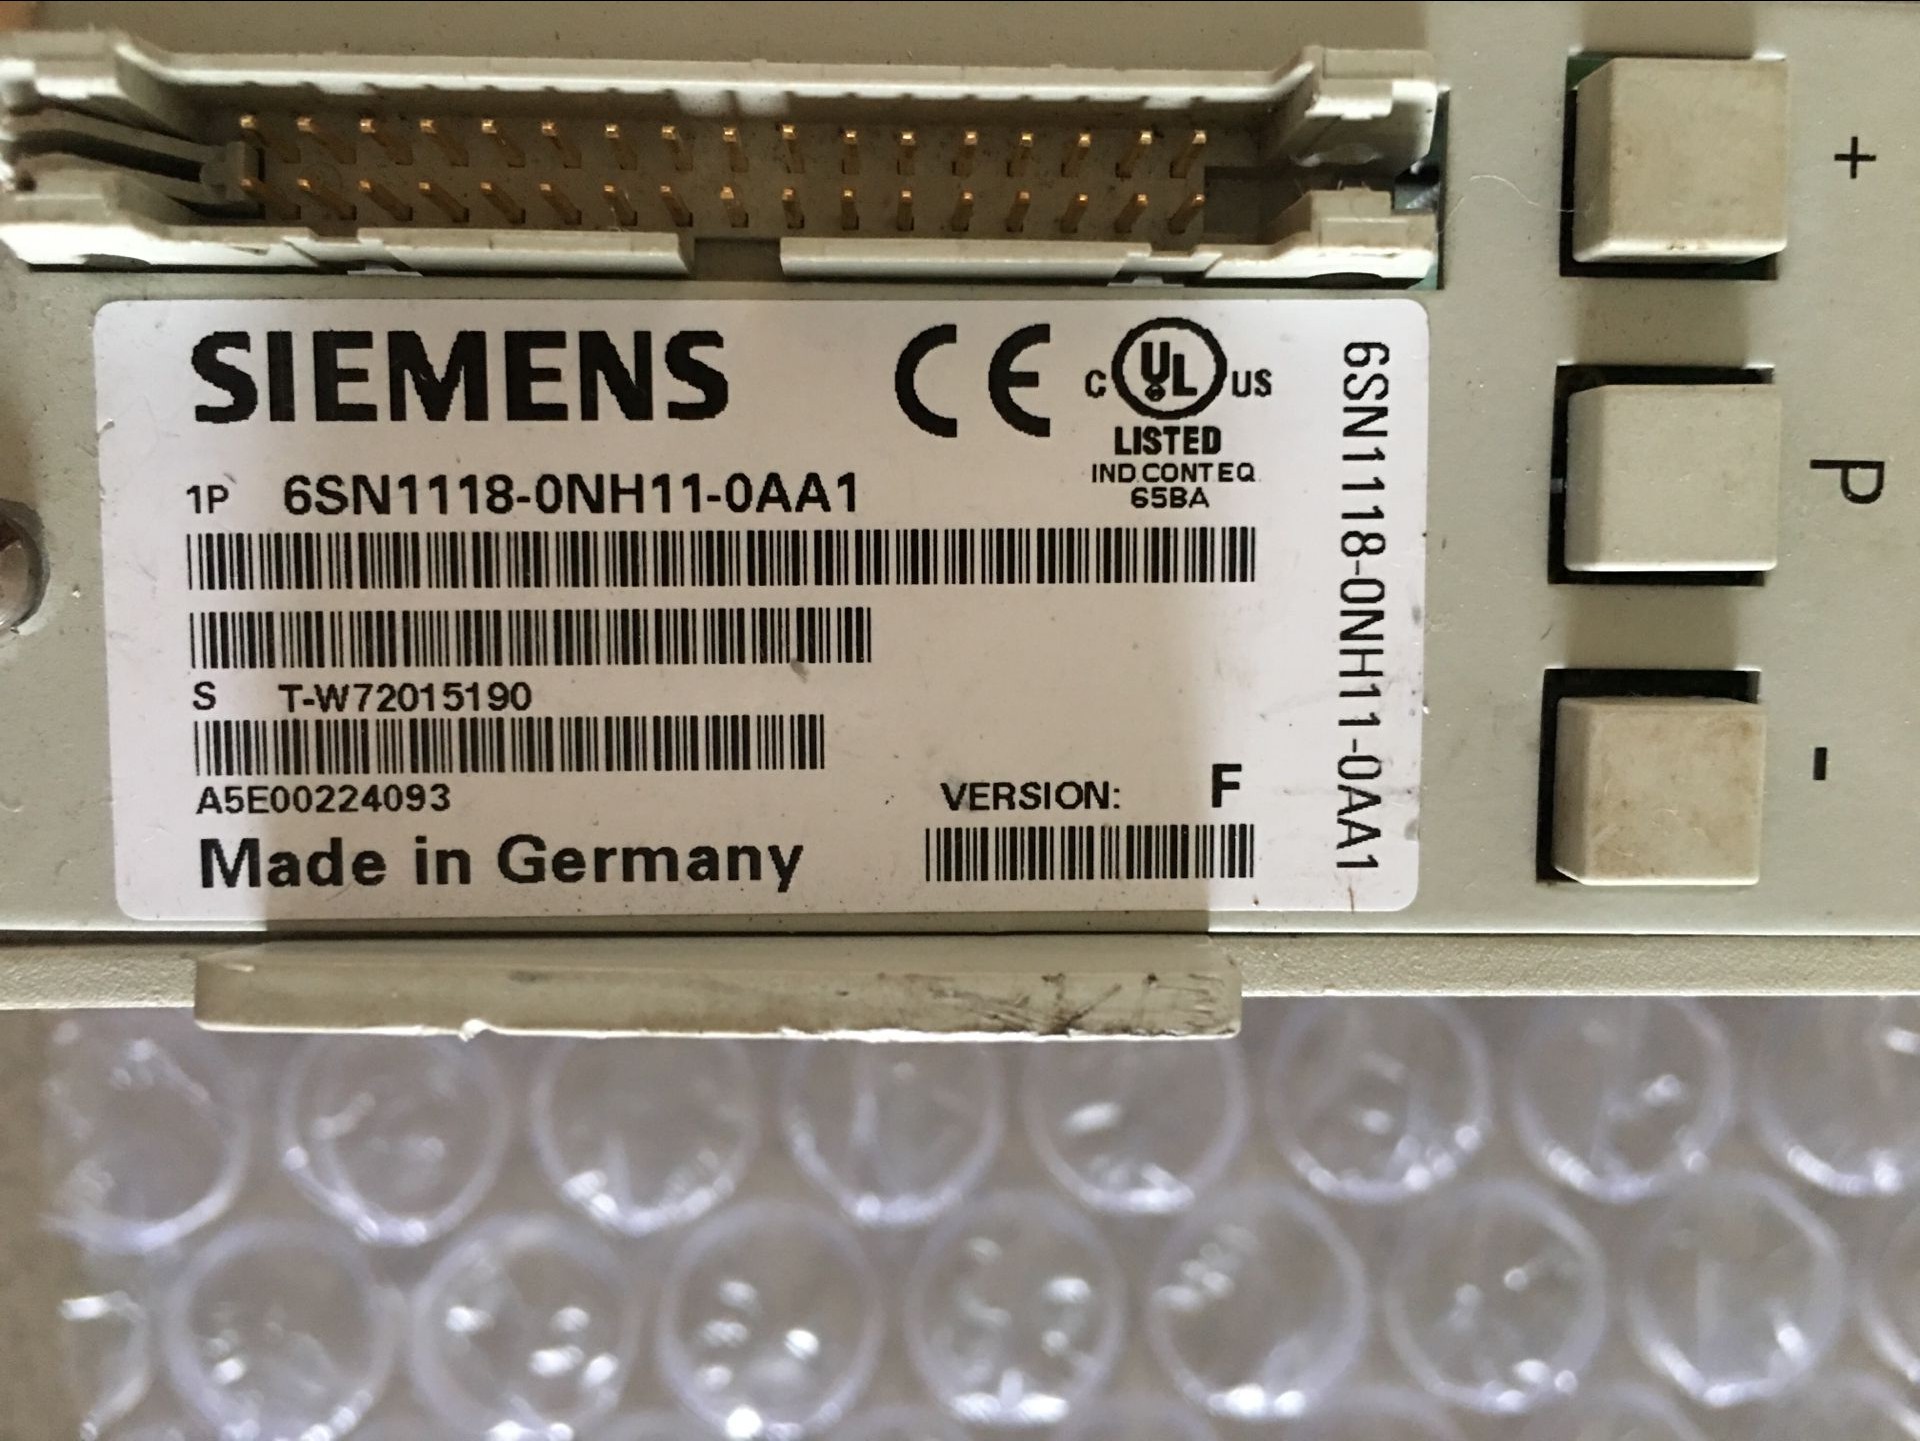 A5E00224093 Siemens axis card 6SN1118-0NH11-0AA1